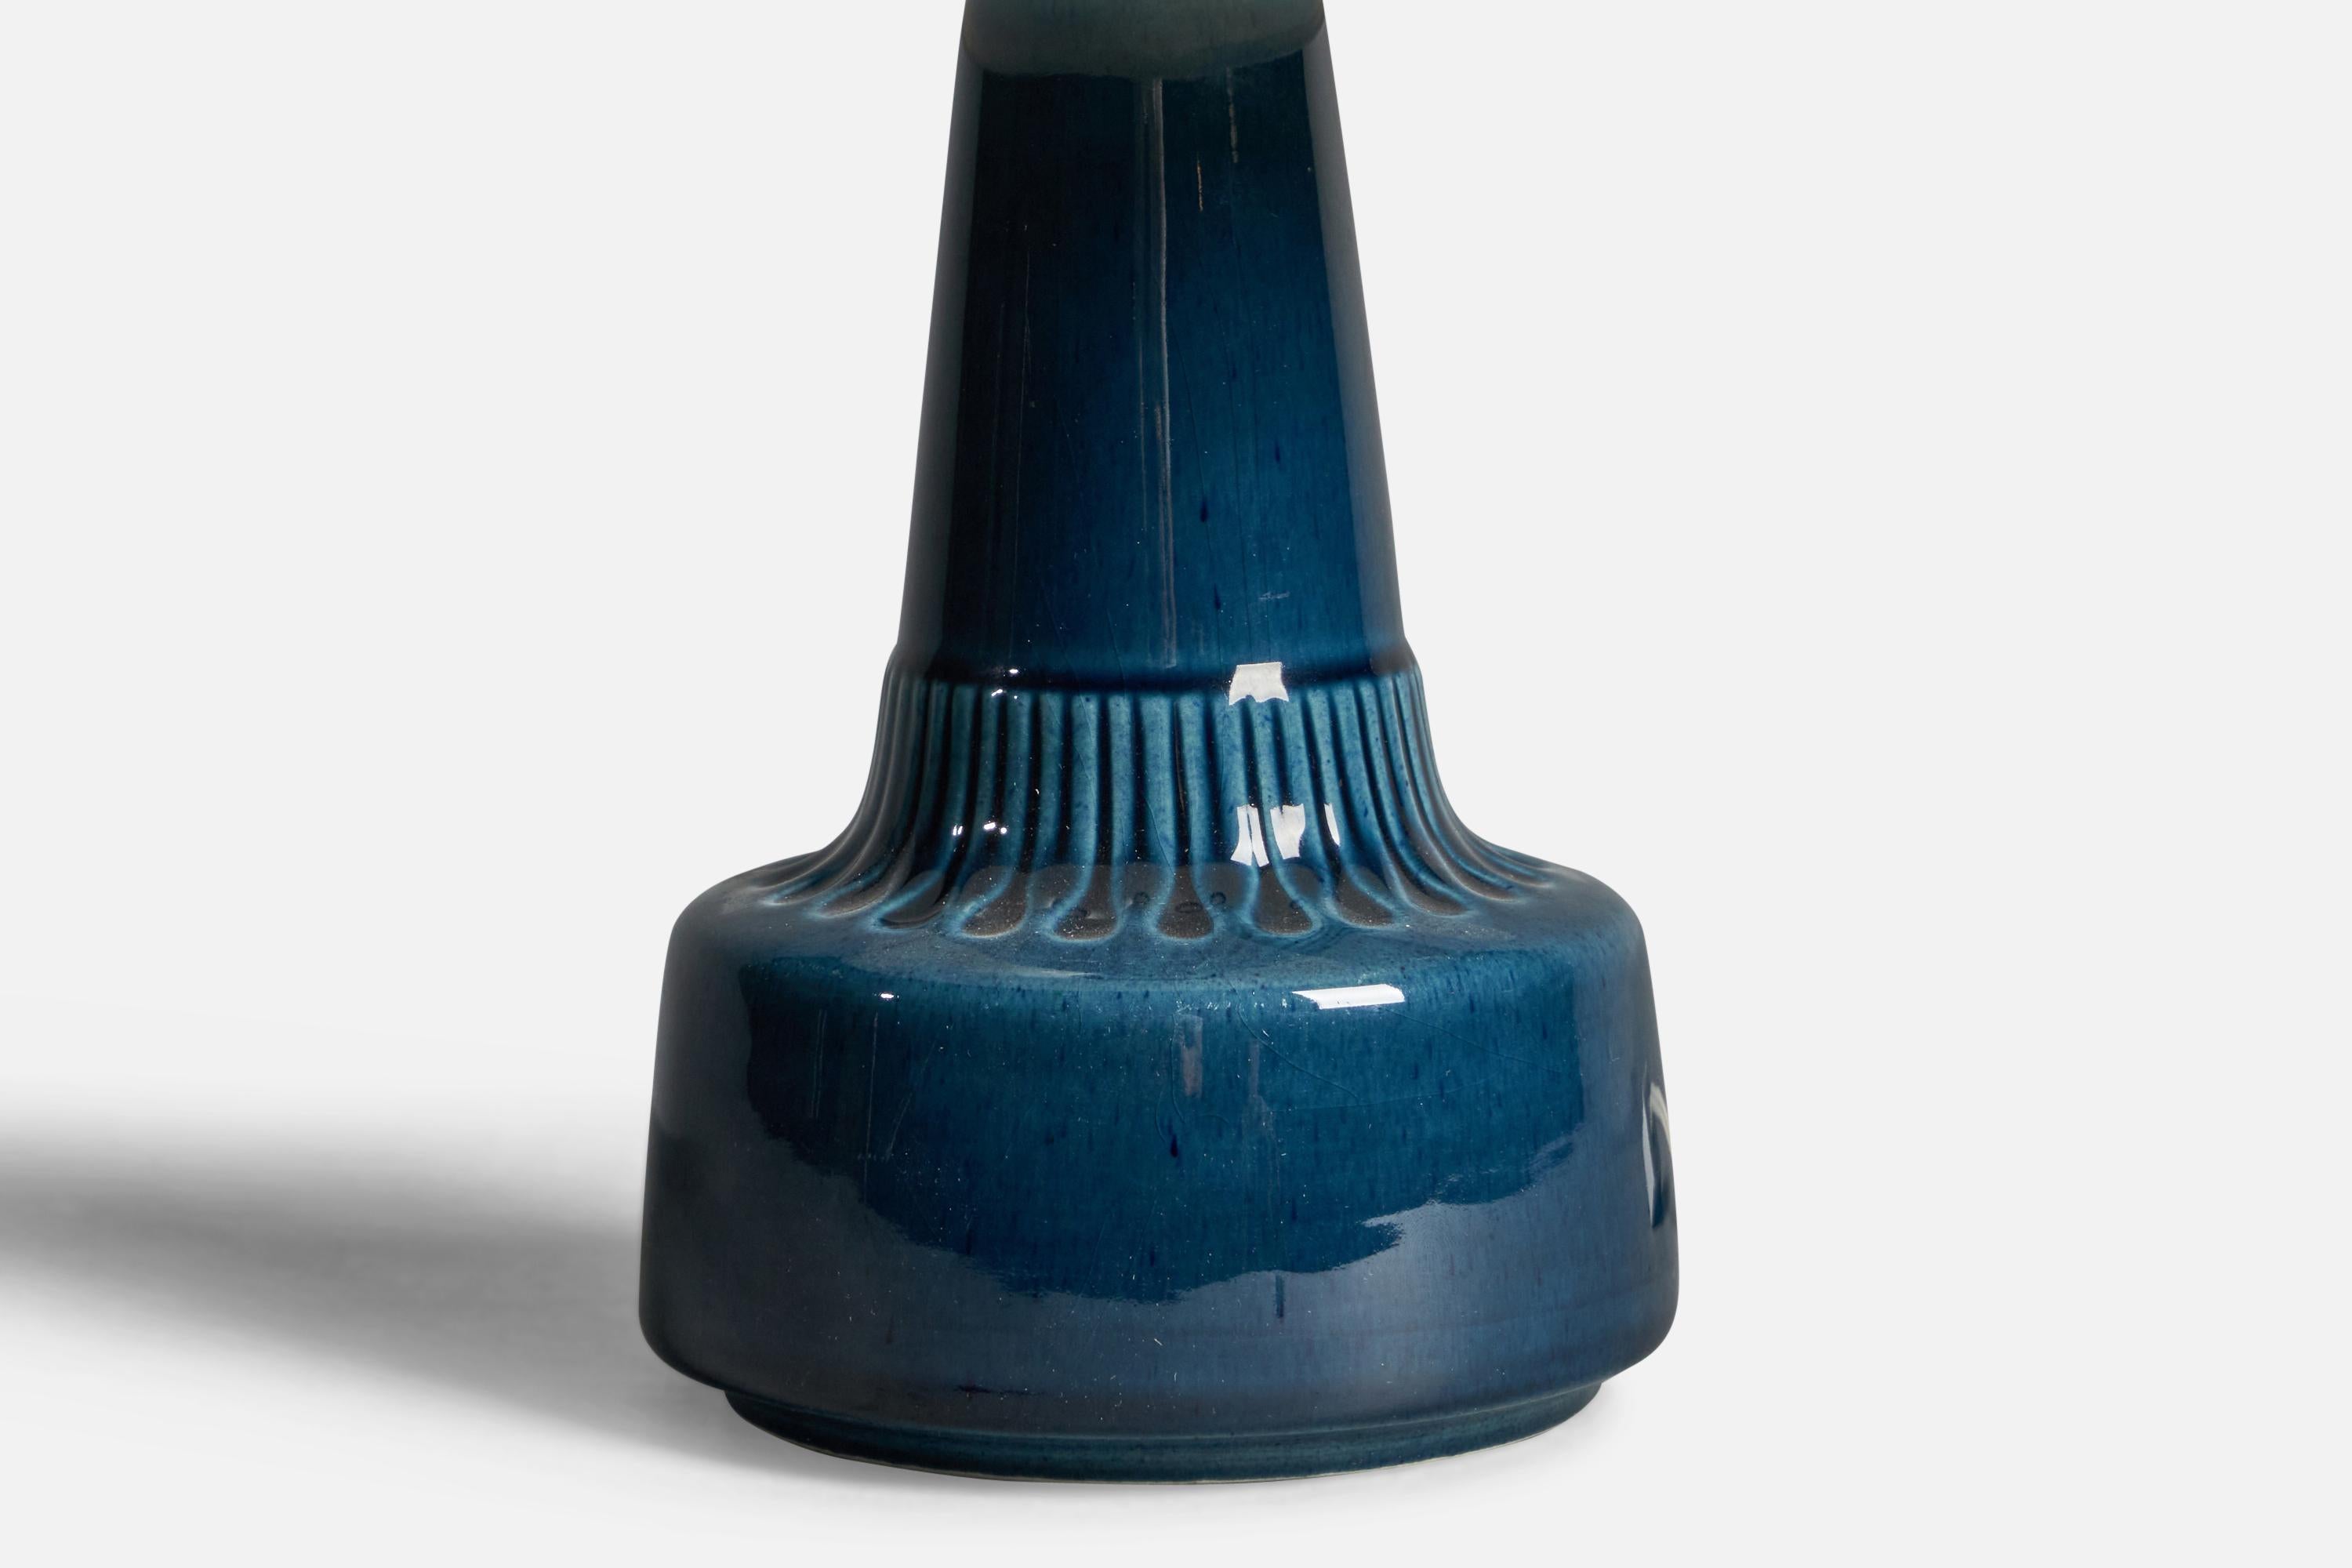 Tischlampe aus blau glasiertem Steingut, entworfen und hergestellt von Søholm, Bornholm, Dänemark, 1960er Jahre.

Abmessungen der Lampe (Zoll): 9